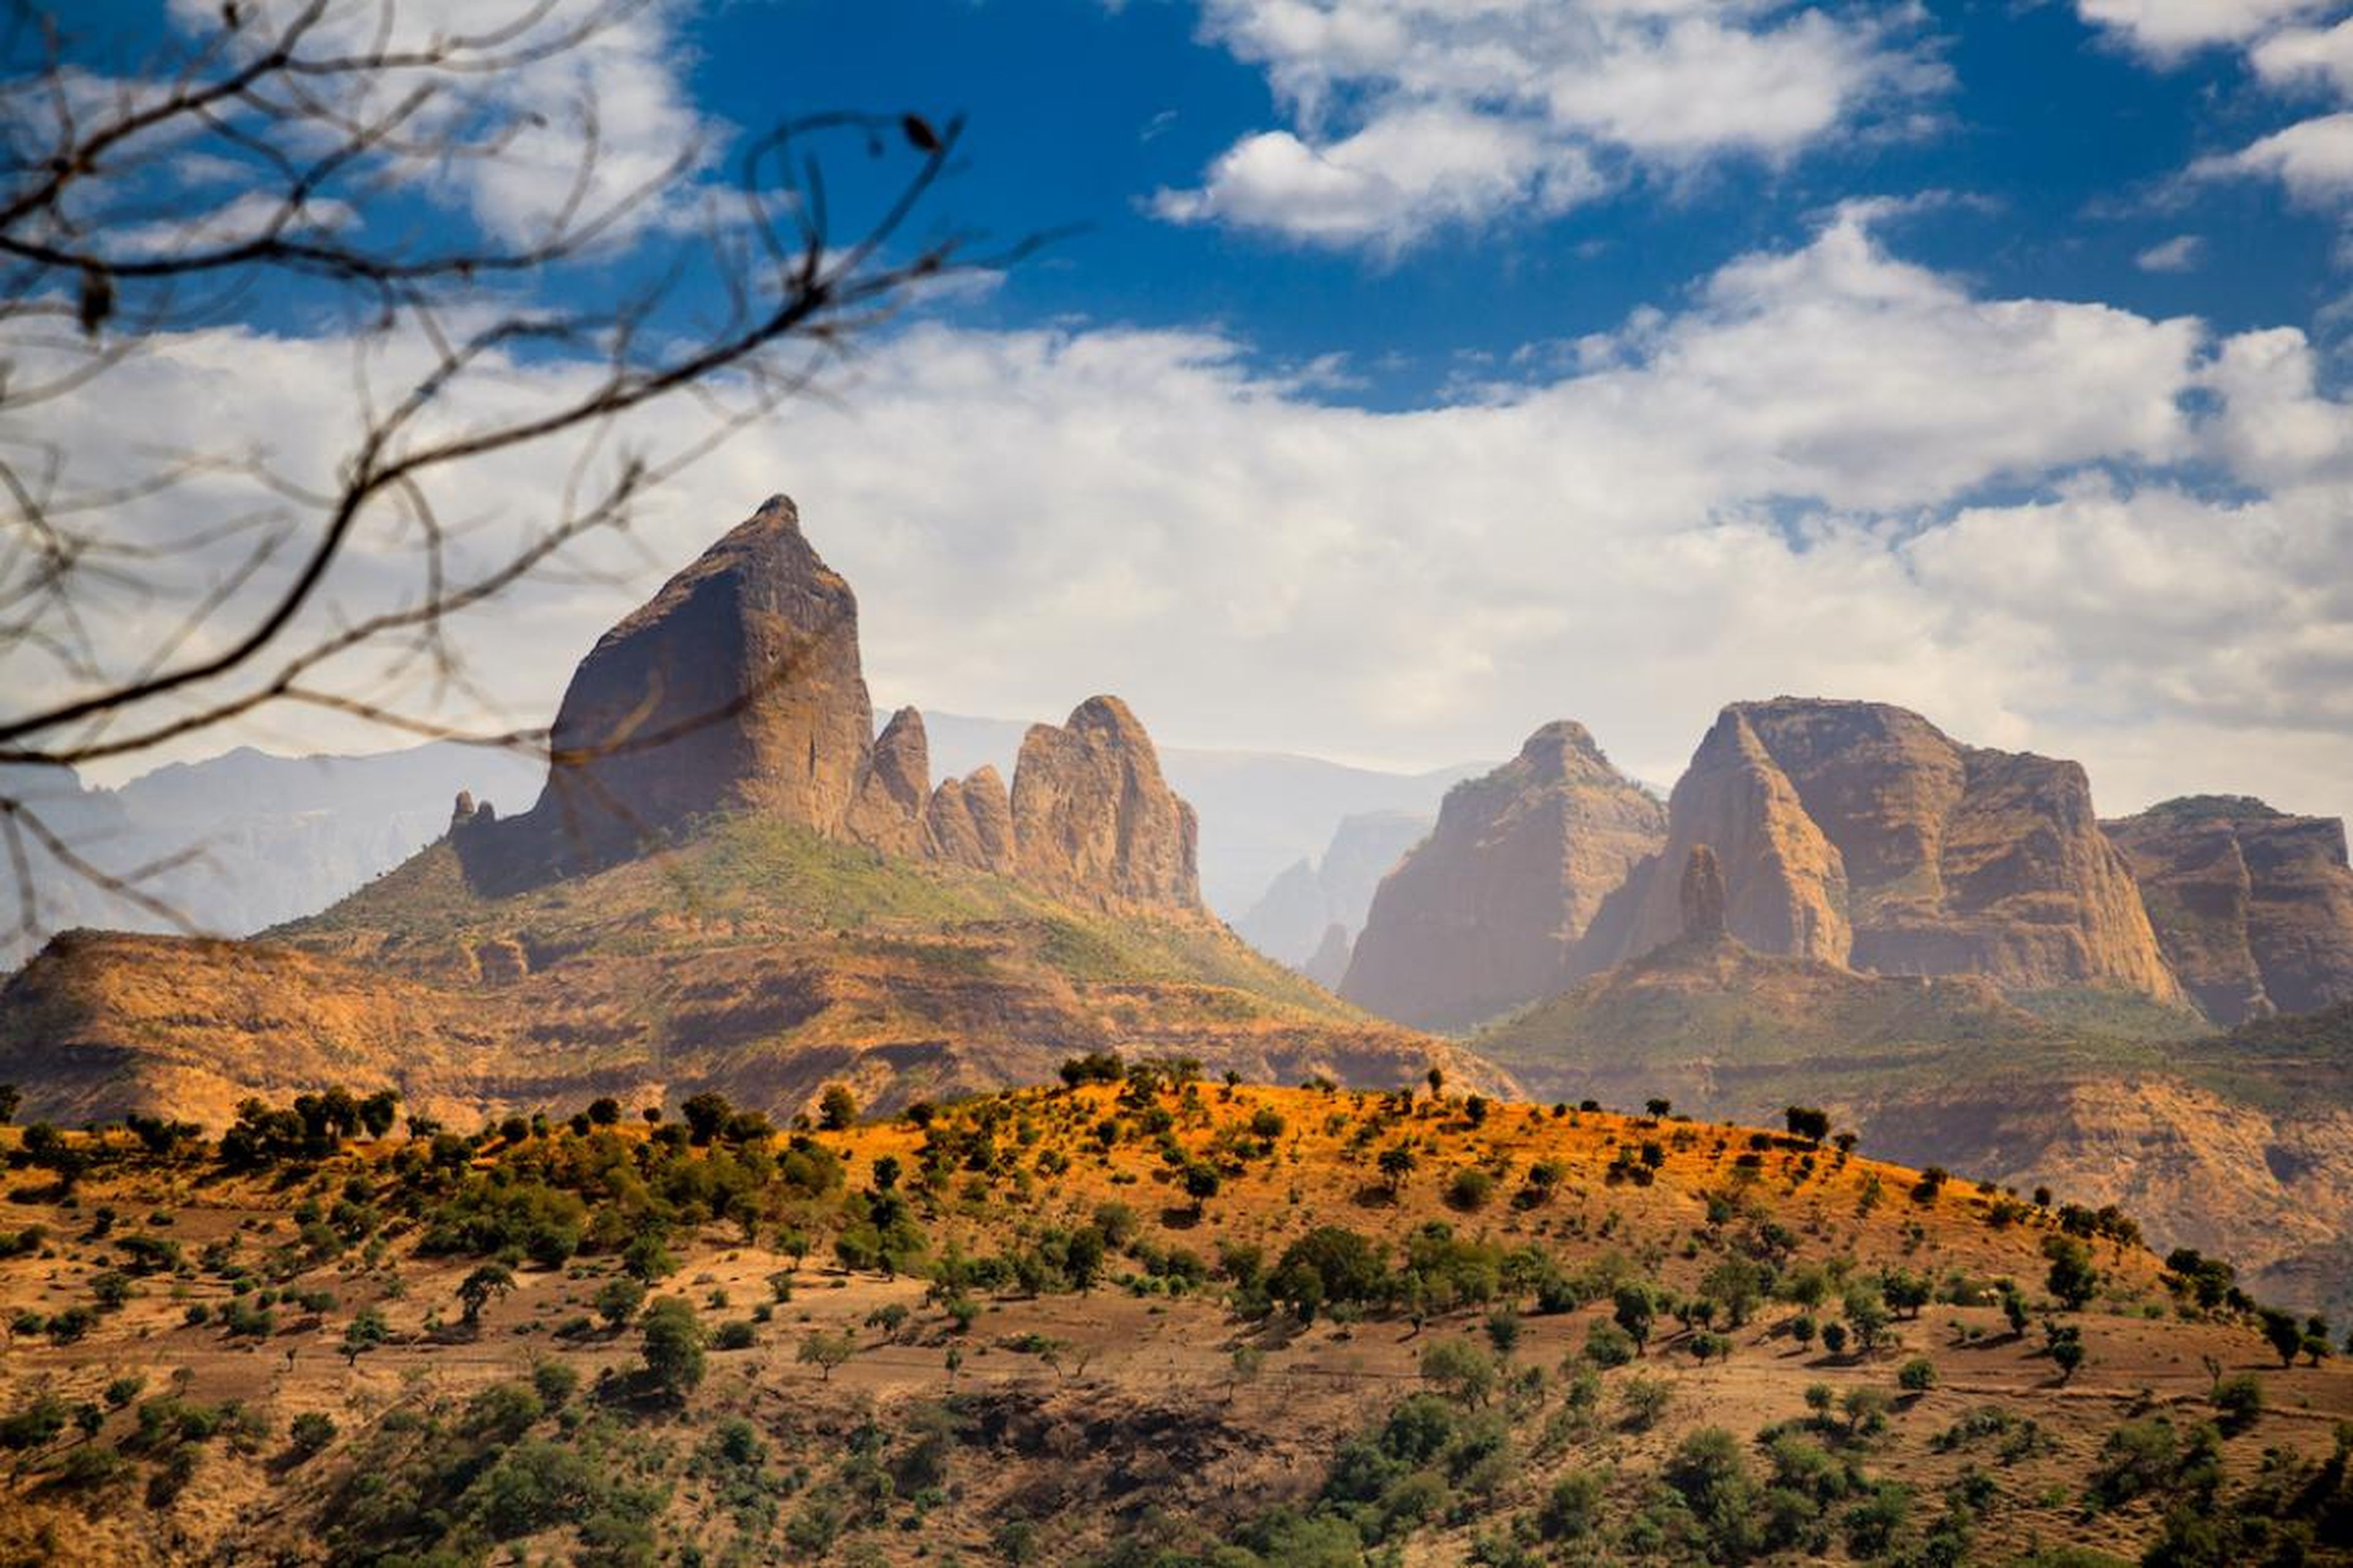 Etiopía está al borde de un gran avance turístico.